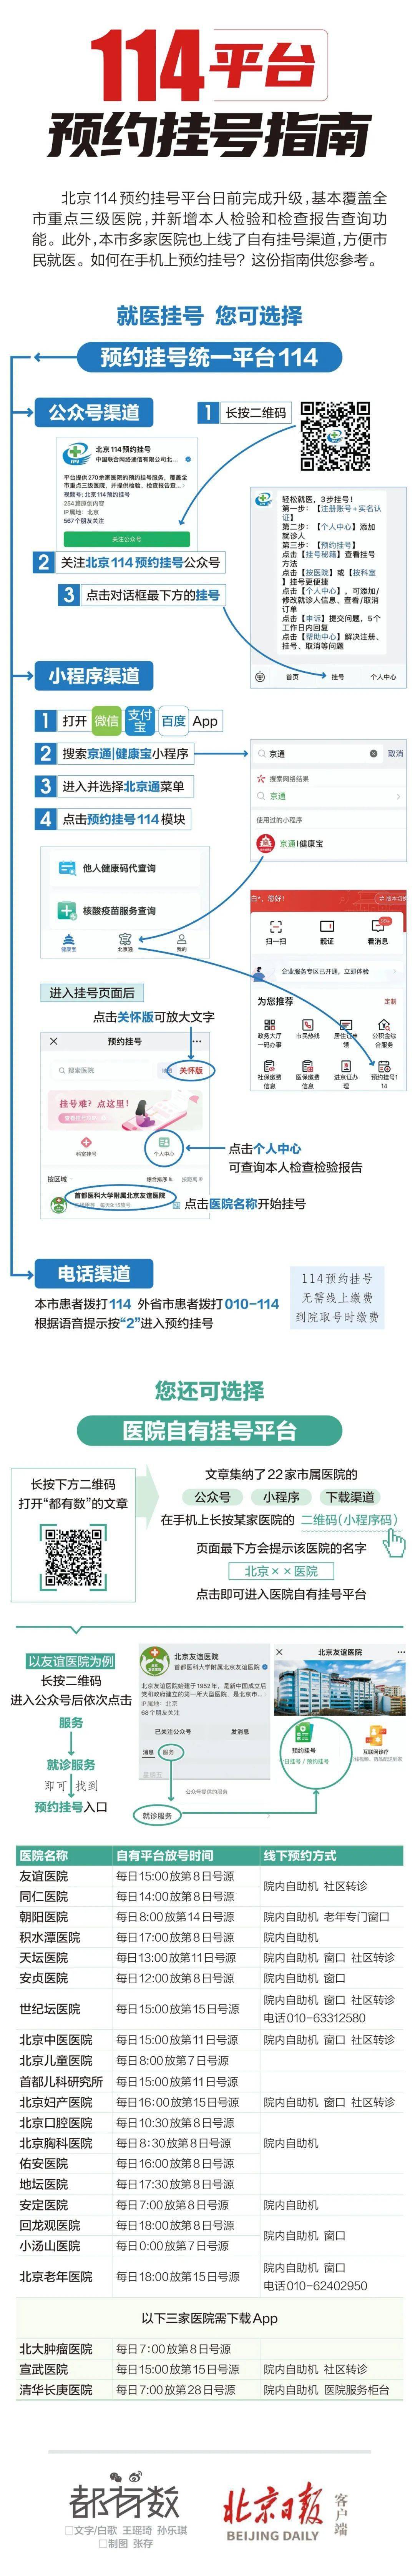 北京交通停车苹果版:收藏！北京22家市属医院预约挂号指南来了！转给需要的亲友~